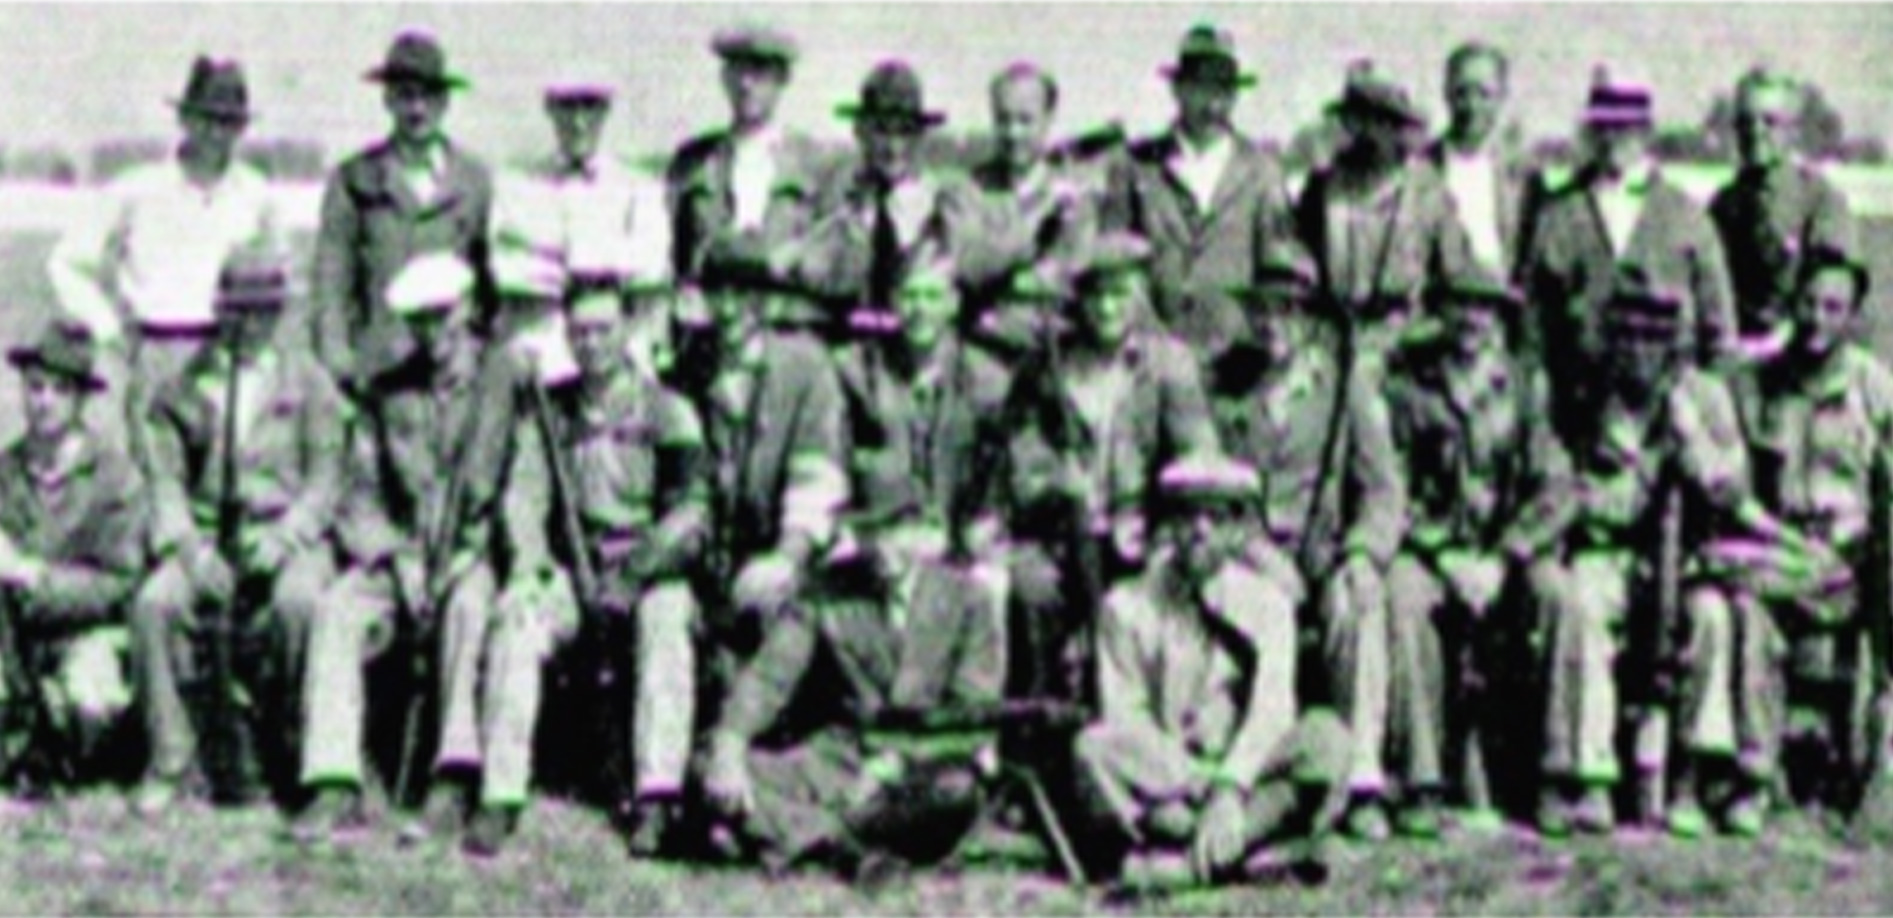 1934 U.S. RWS Team